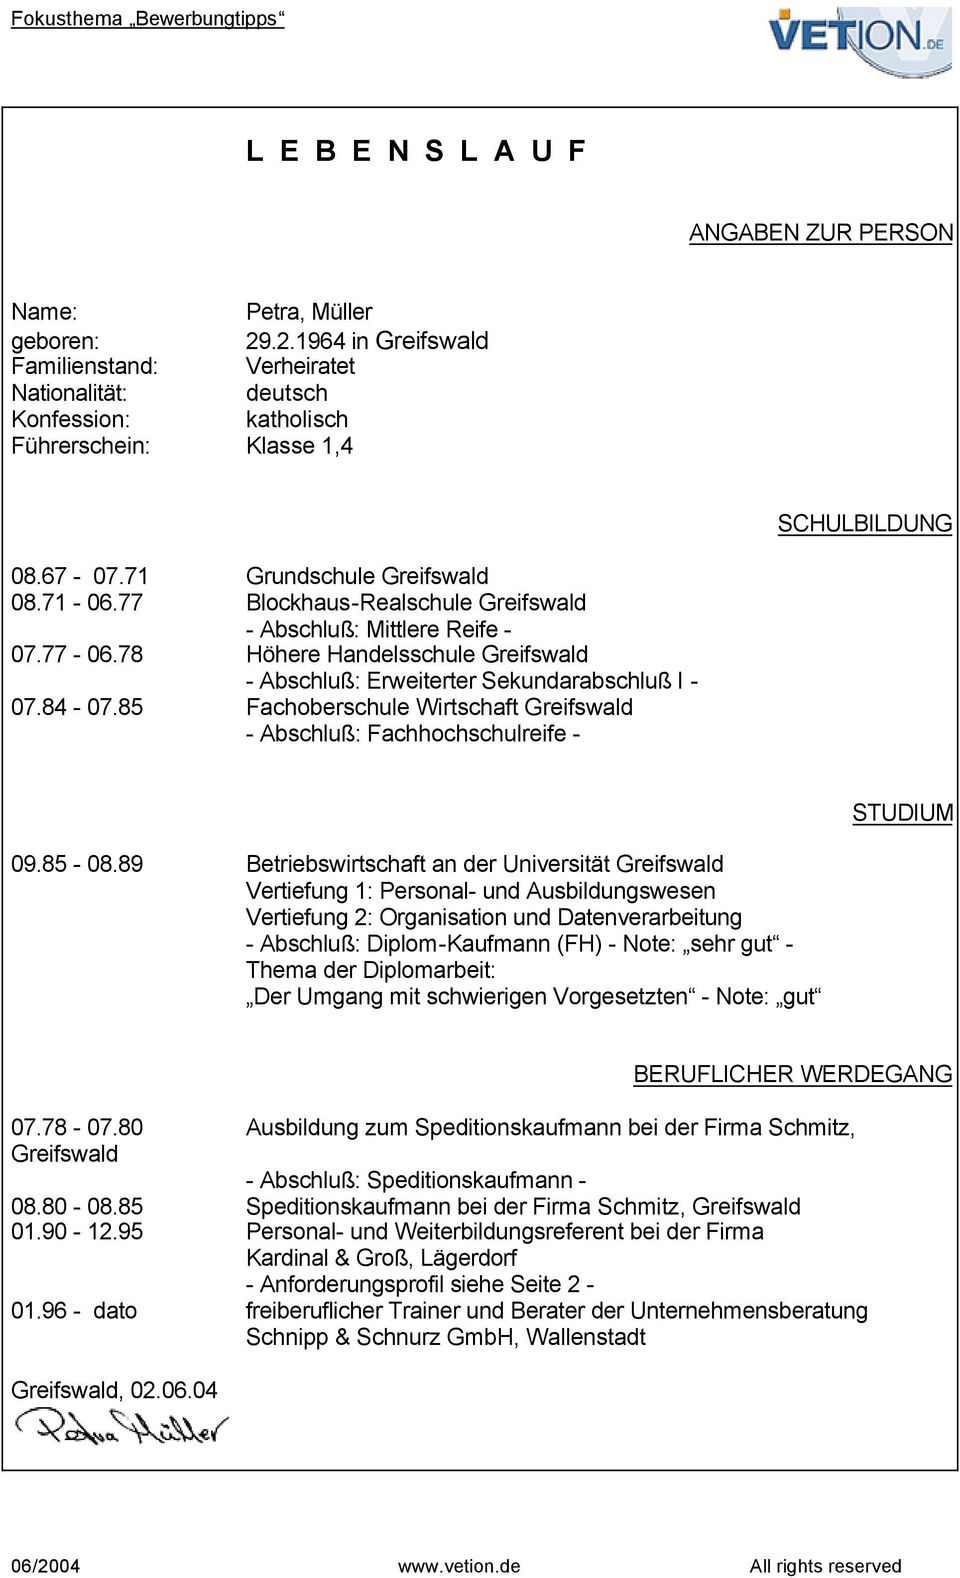 77 Blockhaus-Realschule Greifswald - Abschluß: Mittlere Reife - 07.77-06.78 Höhere Handelsschule Greifswald - Abschluß: Erweiterter Sekundarabschluß I - 07.84-07.